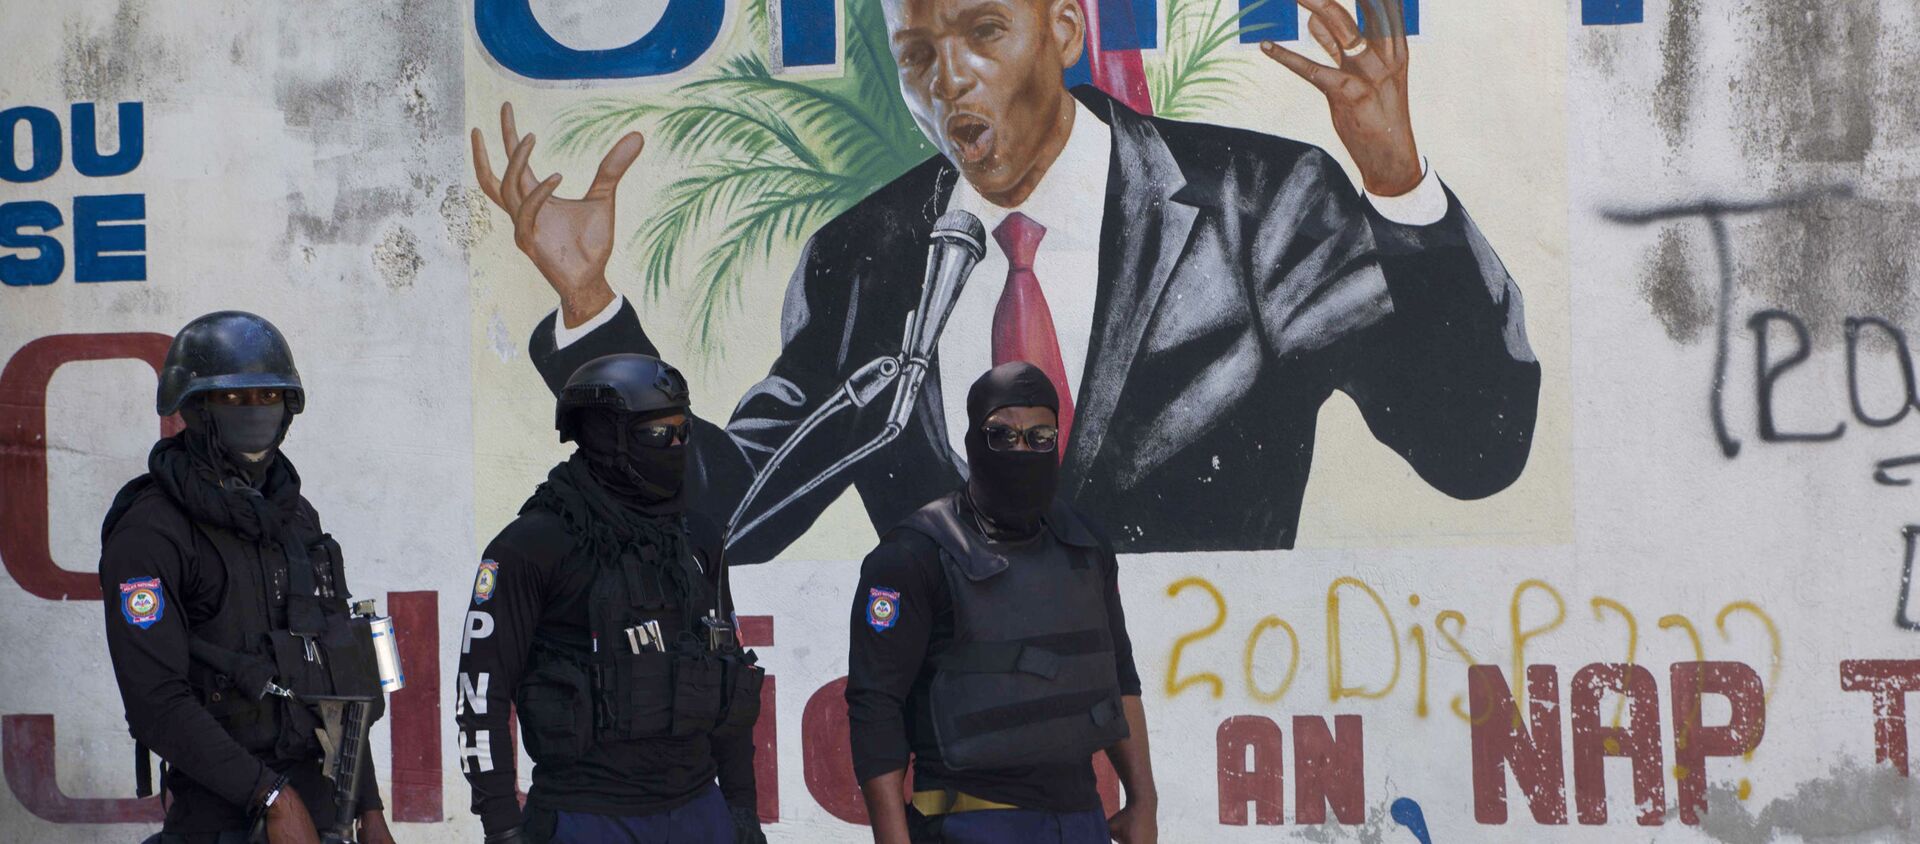 Cảnh sát đứng gần bức tranh tường có hình Tổng thống Haiti Jovenel Moise, gần tư dinh của nhà lãnh đạo nơi ông bị giết bởi các tay súng vào sáng sớm ở Port-au-Prince, Haiti, Thứ Tư, ngày 7 tháng 7 năm 2021. - Sputnik Việt Nam, 1920, 08.07.2021